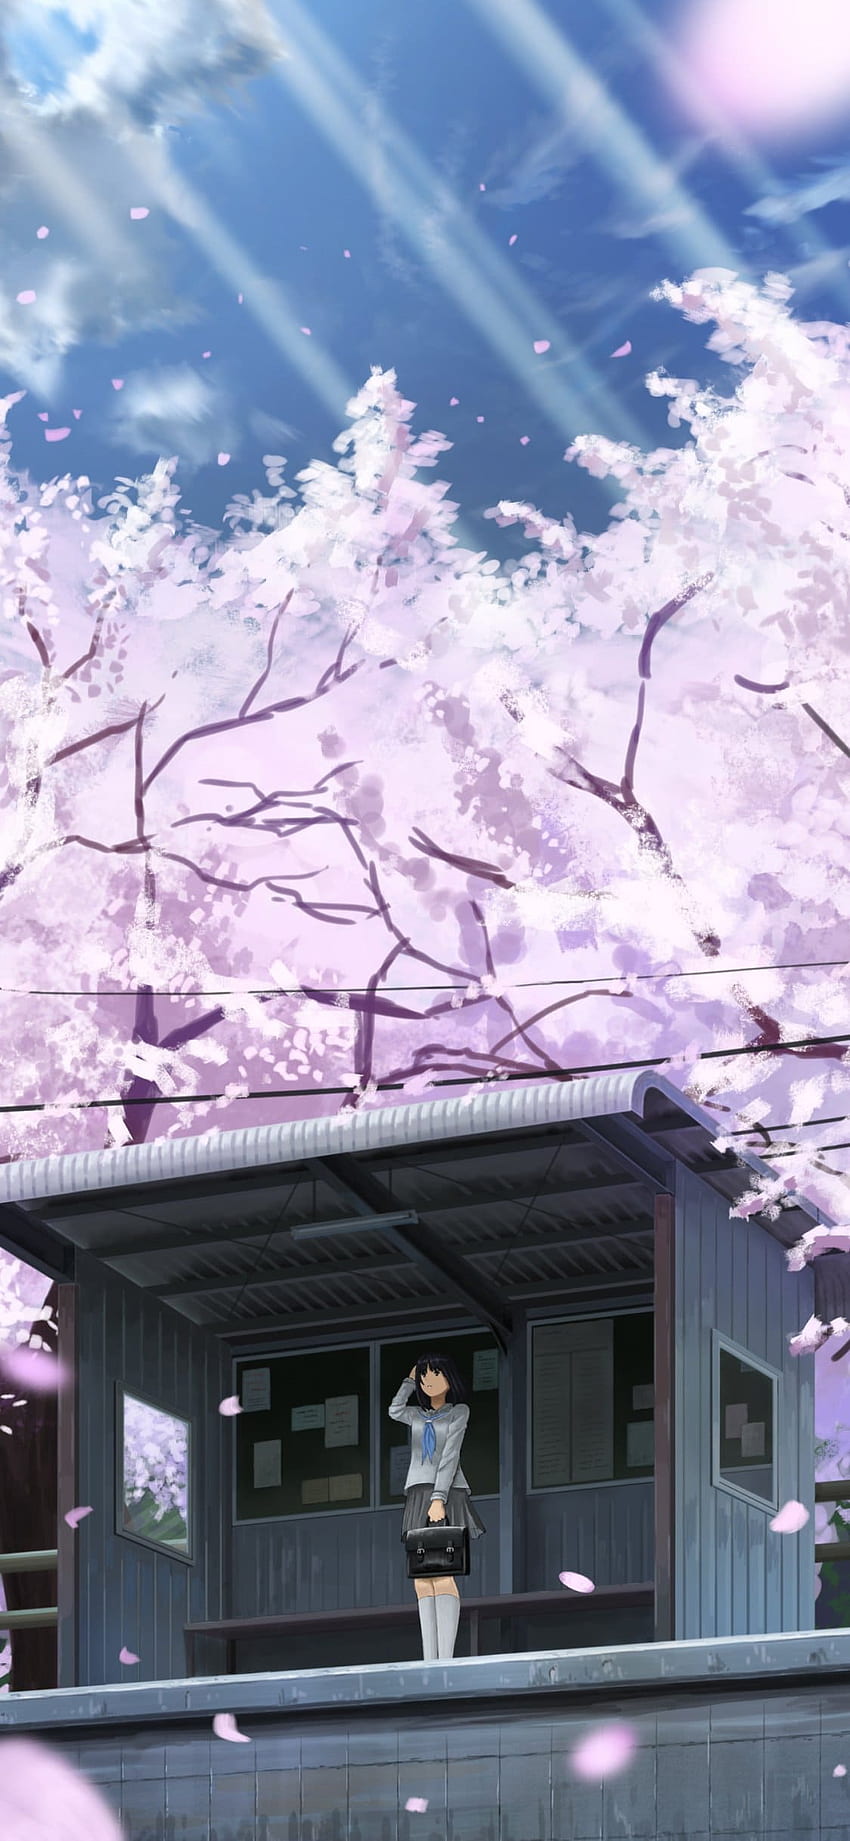 Anime hình nền hoa anh đào giúp bạn tận hưởng vẻ đẹp tự nhiên của sự nổi tiếng của Nhật Bản. Hãy để những hình ảnh tuyệt đẹp này giúp bạn tìm lại bình yên trong cuộc sống. Bạn sẽ cảm thấy thật yên bình khi trang trí hình nền thiên nhiên với Anime hình nền hoa anh đào tuyệt đẹp này.